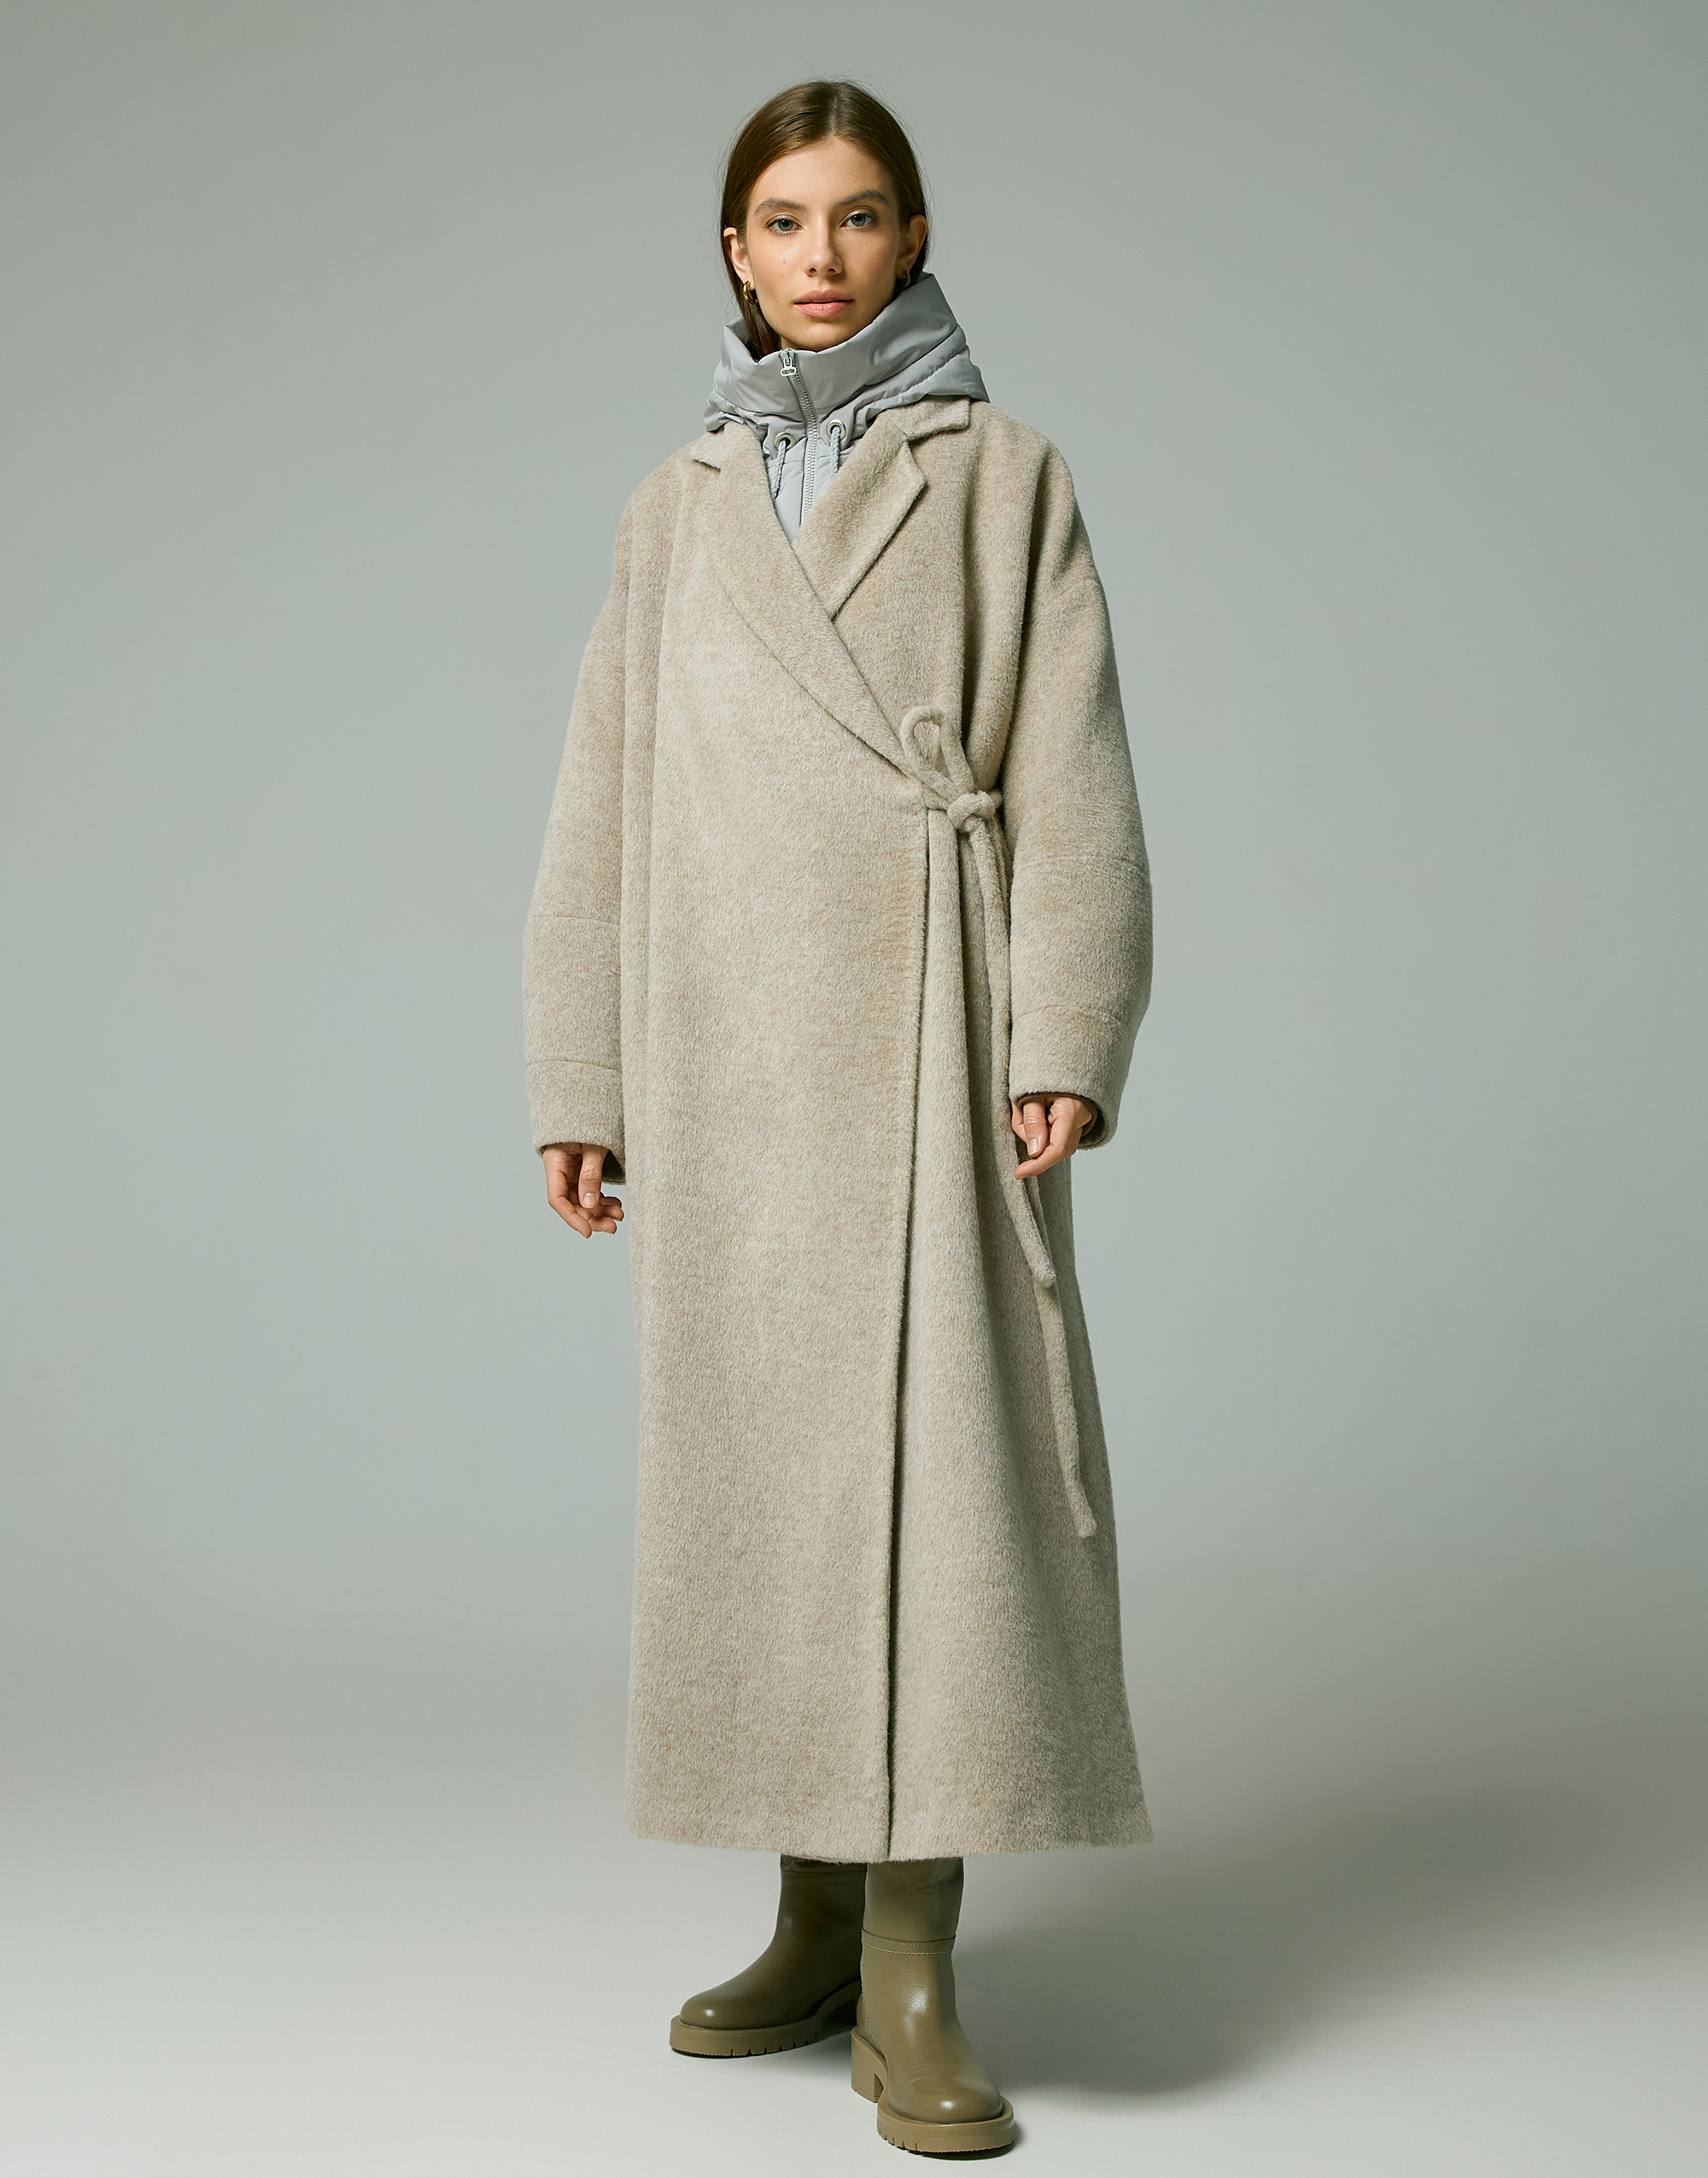 Coat, pattern №869